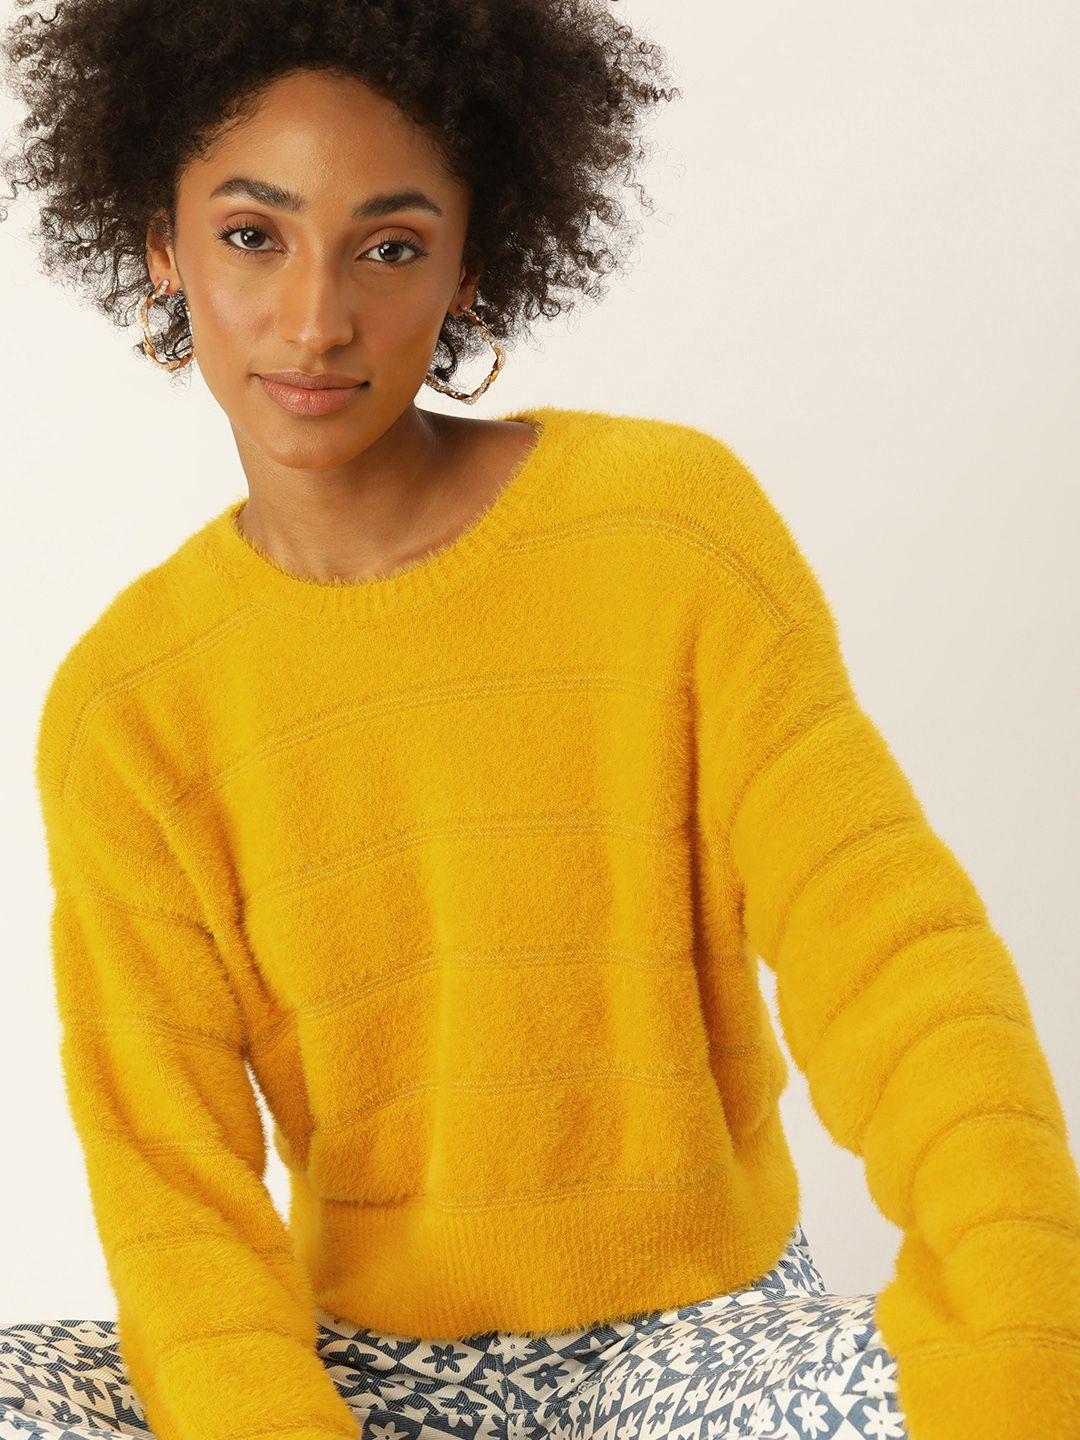 kook n keech women yellow striped striped pullover sweater